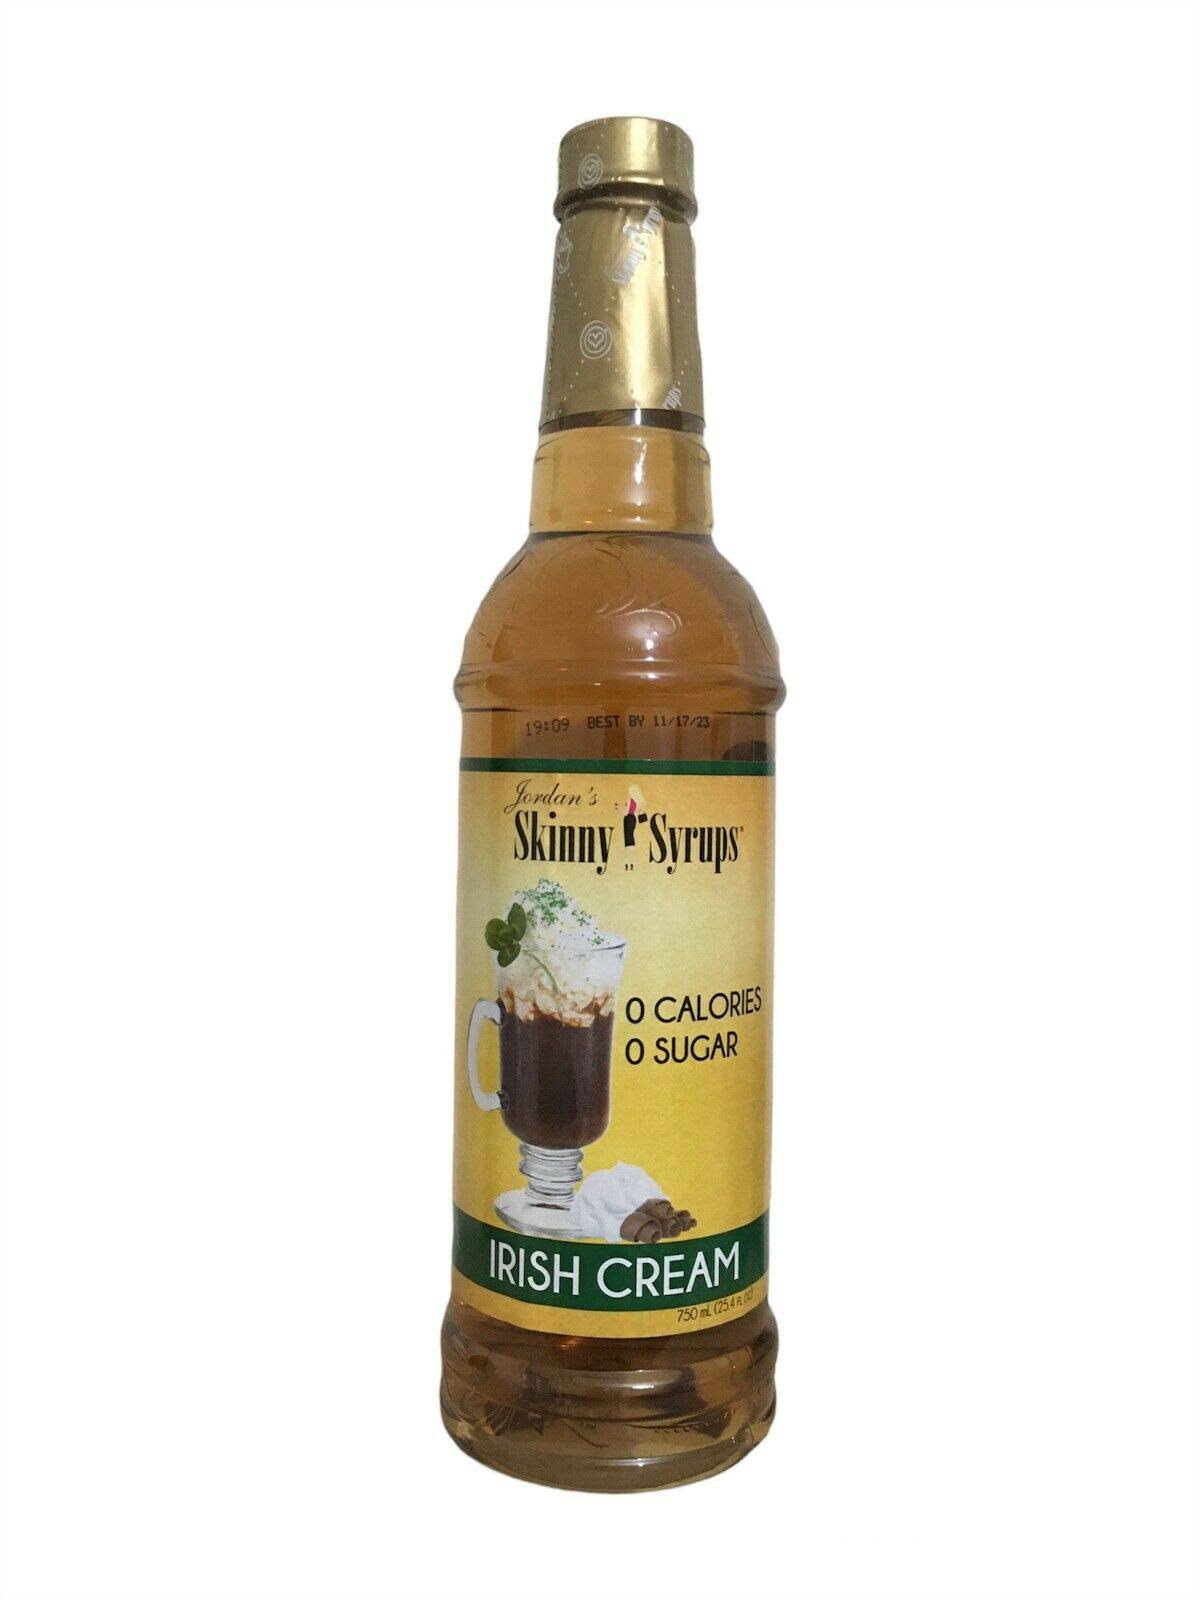 Jordan's Skinny Syrups - Sugar-Free, Irish Cream, 25.4oz